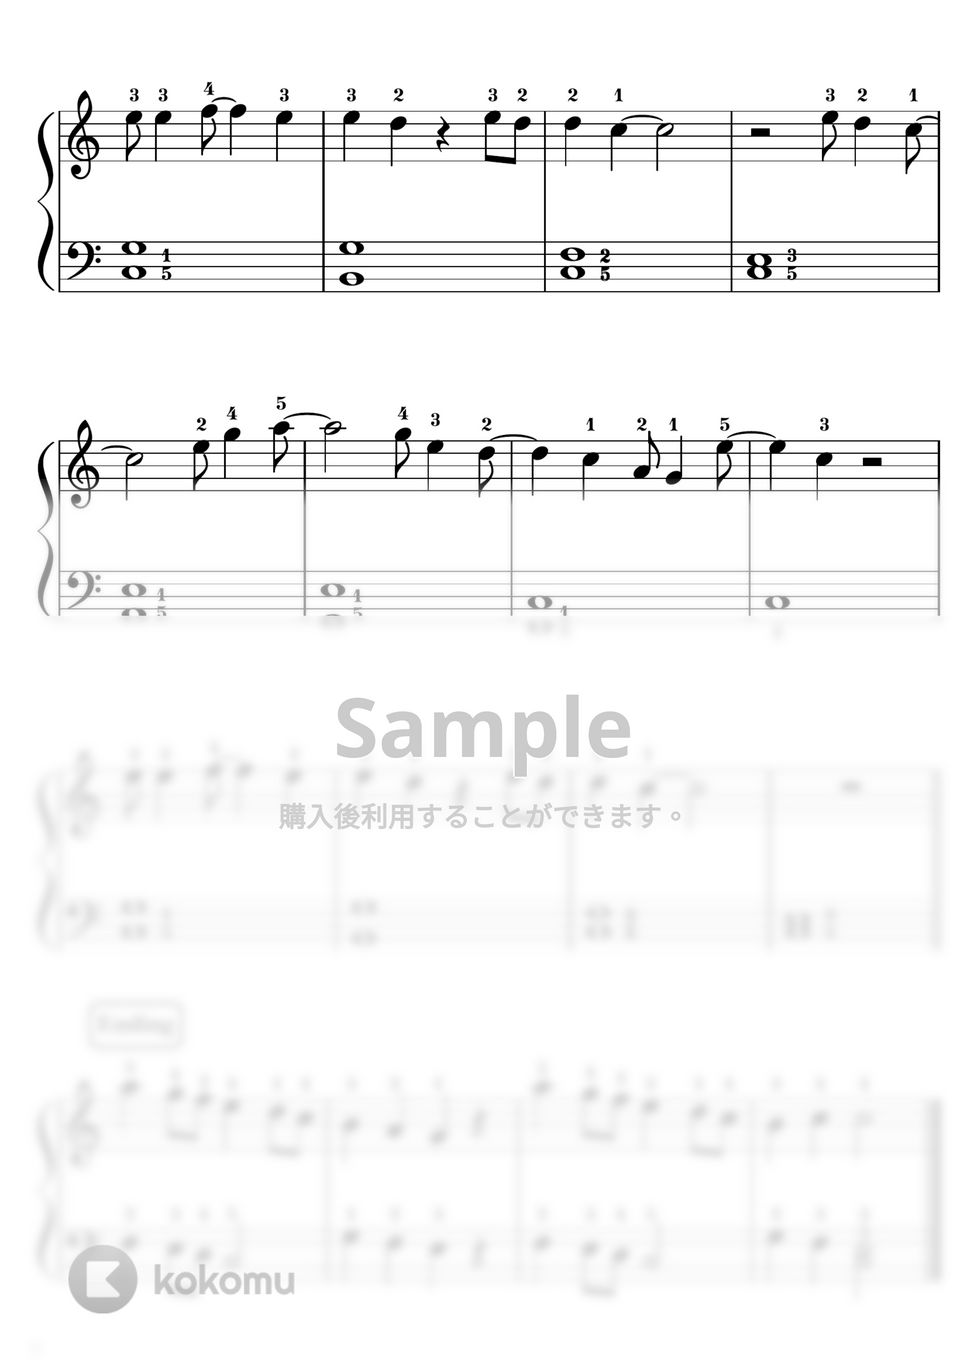 ジョン・レノン - 【初級】Let It Be/Beatles レットイットビー/ビートルズ♬ (ビートルズ,ジョン・レノン,Beatles) by ピアノのせんせいの楽譜集